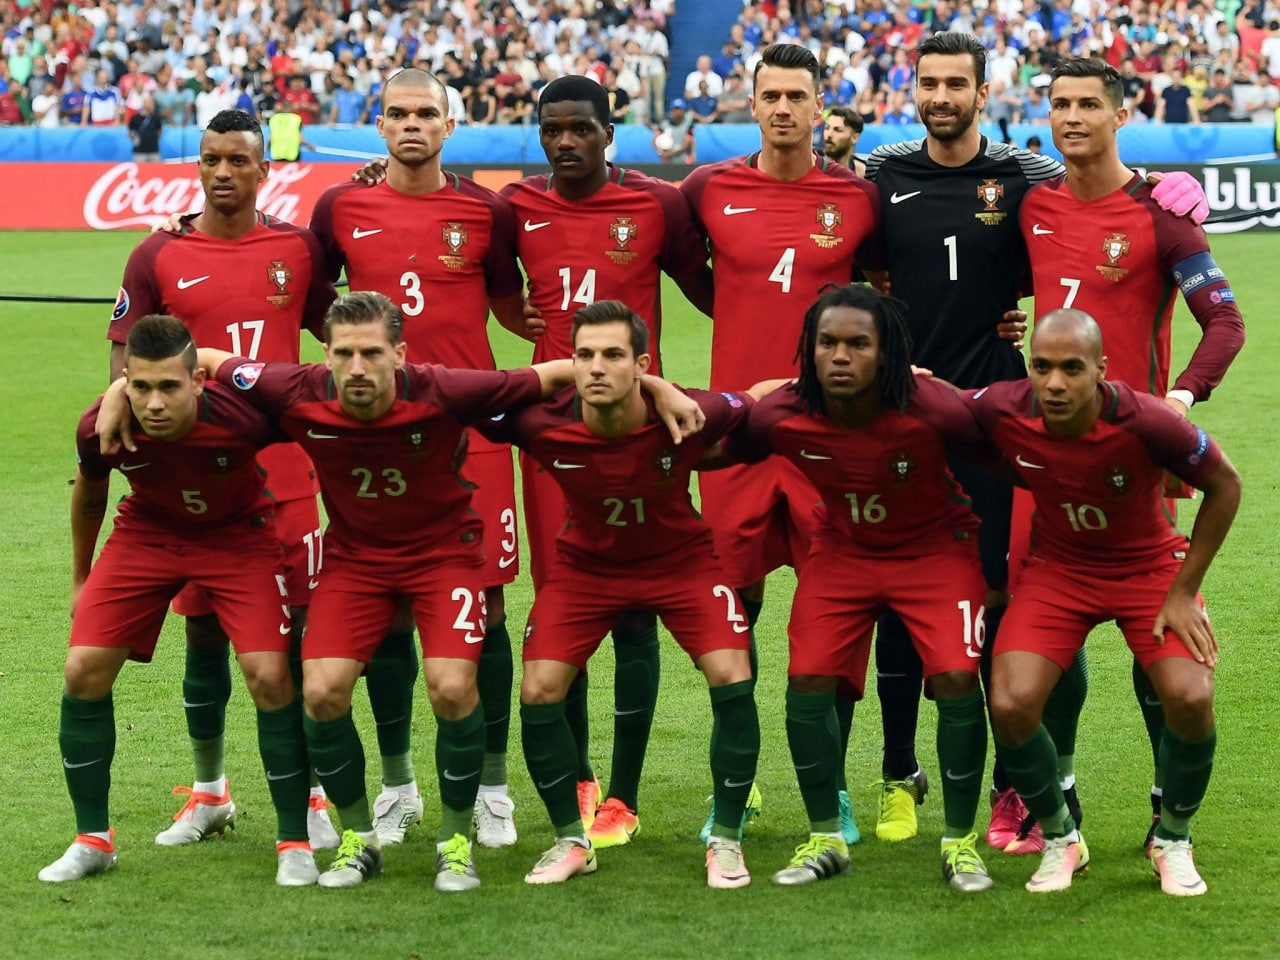 葡萄牙国家足球队,葡萄牙世界杯,阵容,门将,C罗